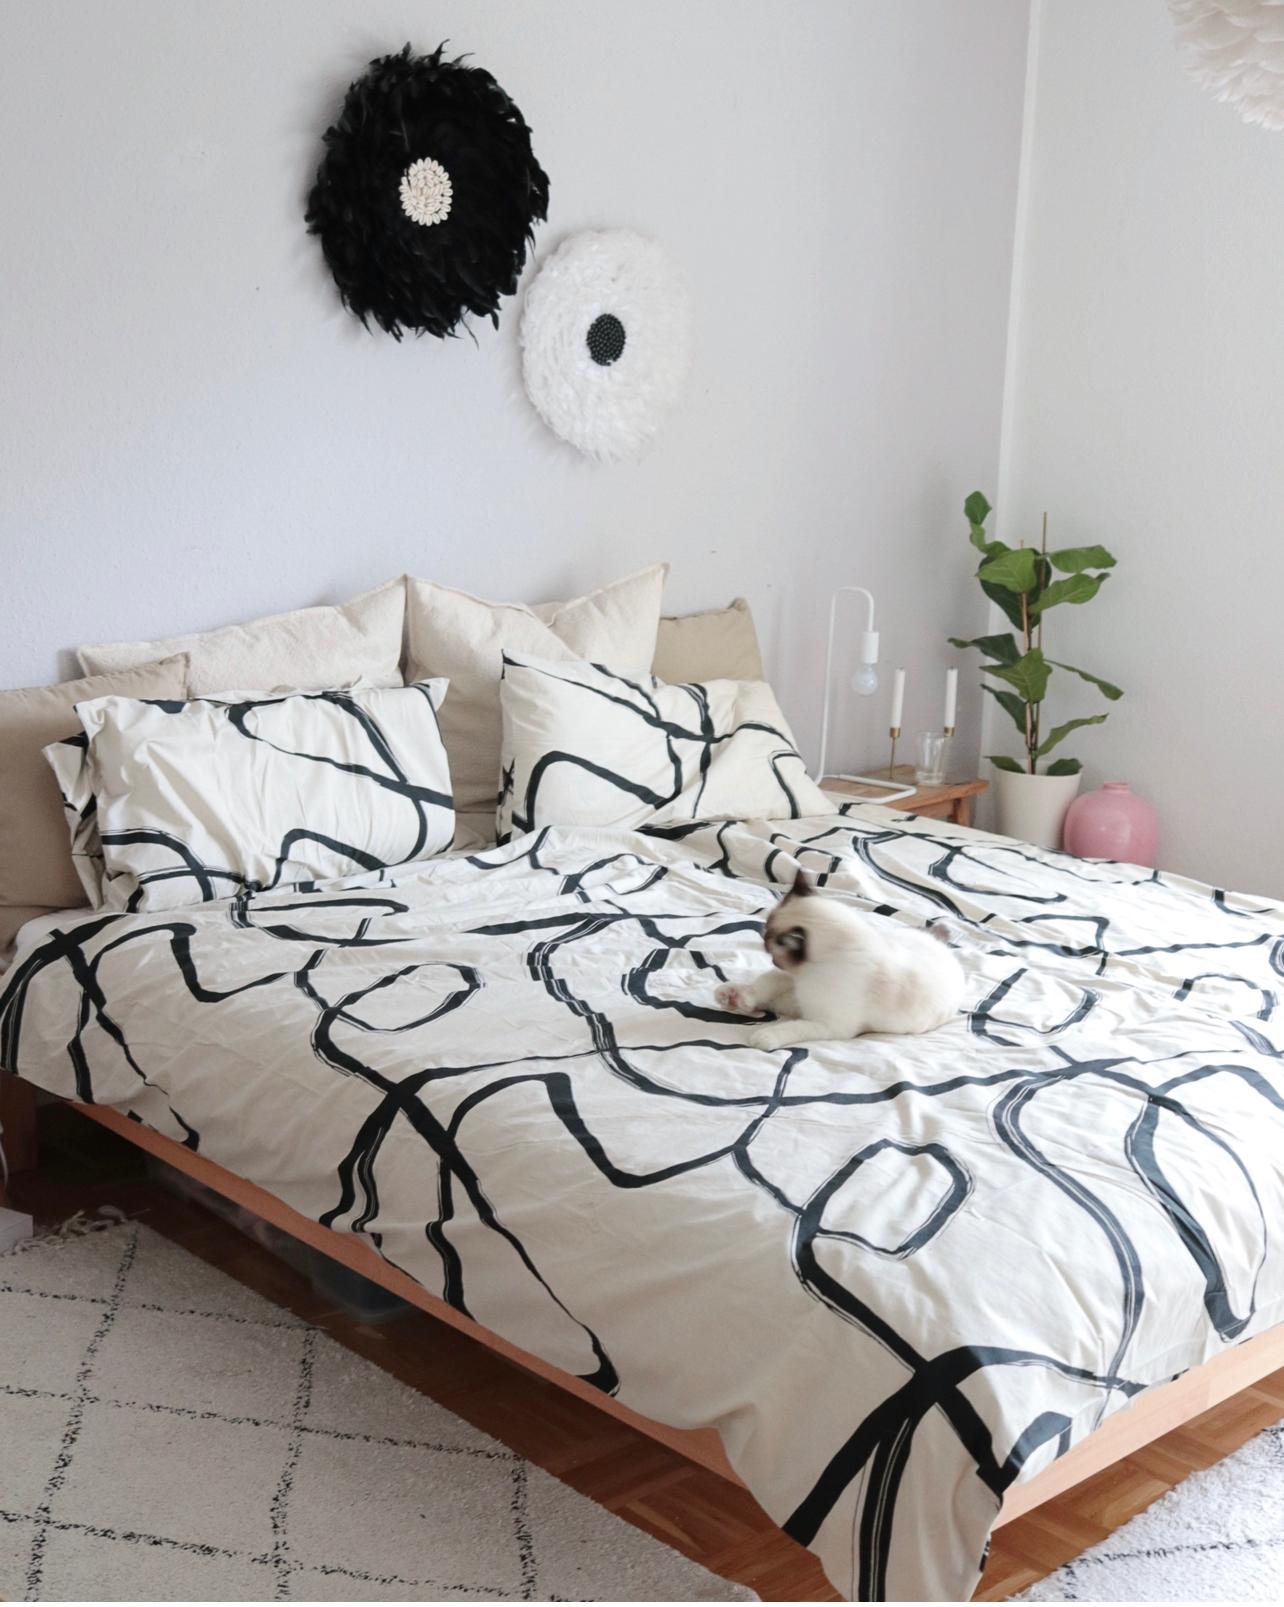 Neue Bettwäsche - neuer Raum 🥰🖤
#bett #schlafzimmer #bettwäsche #HM #cozyhome #cozy #bed #bedroom #schlafzimmerinspo